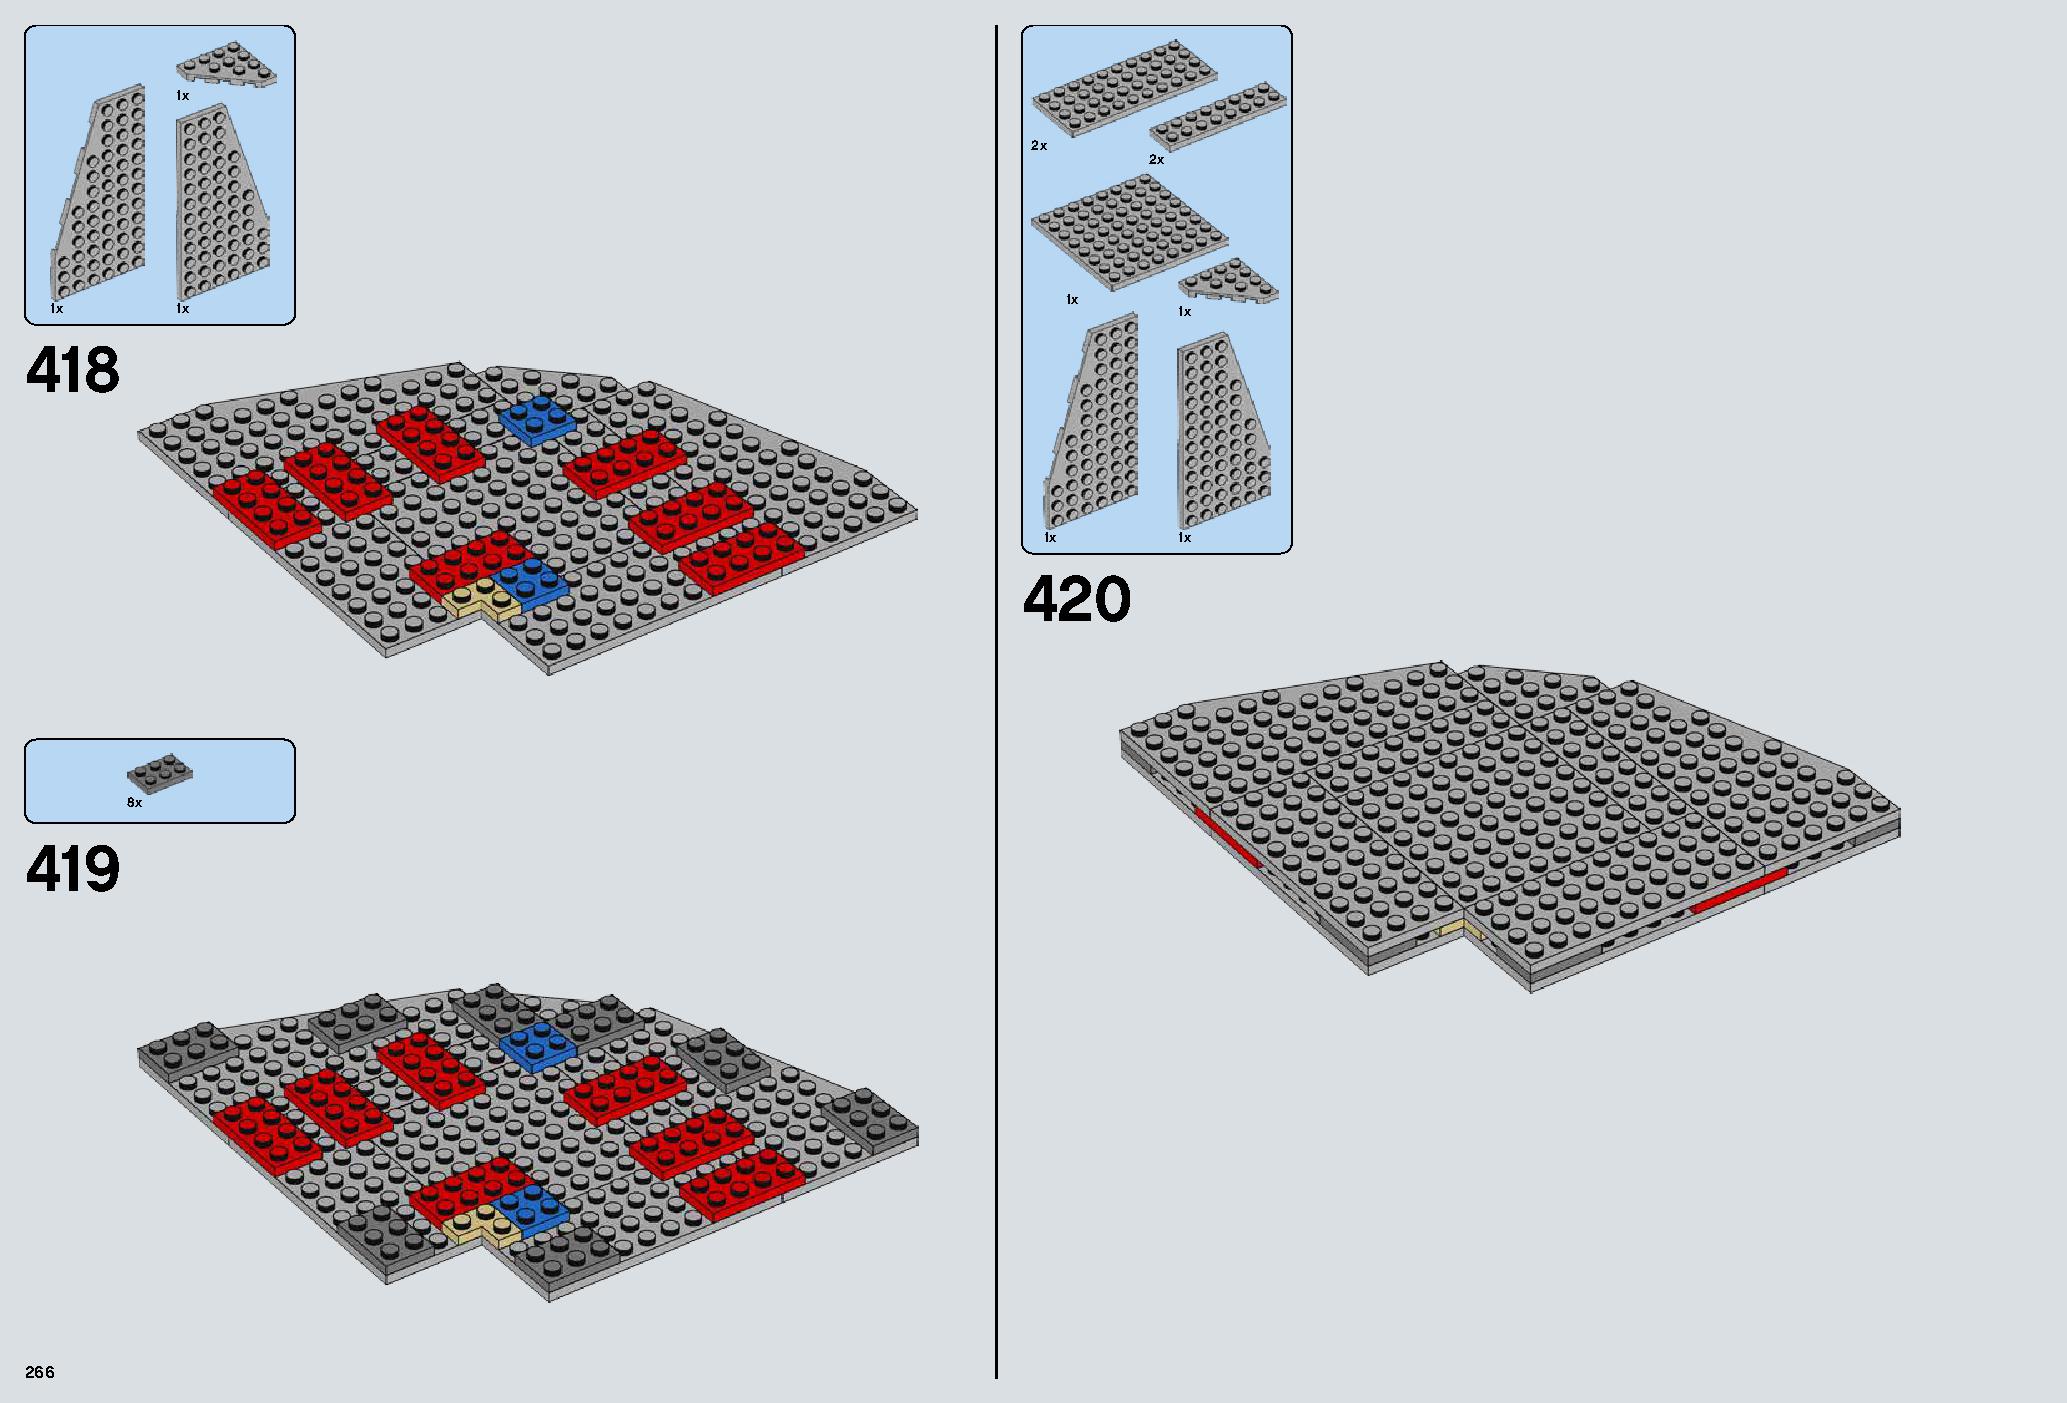 デス・スター 75159 レゴの商品情報 レゴの説明書・組立方法 266 page